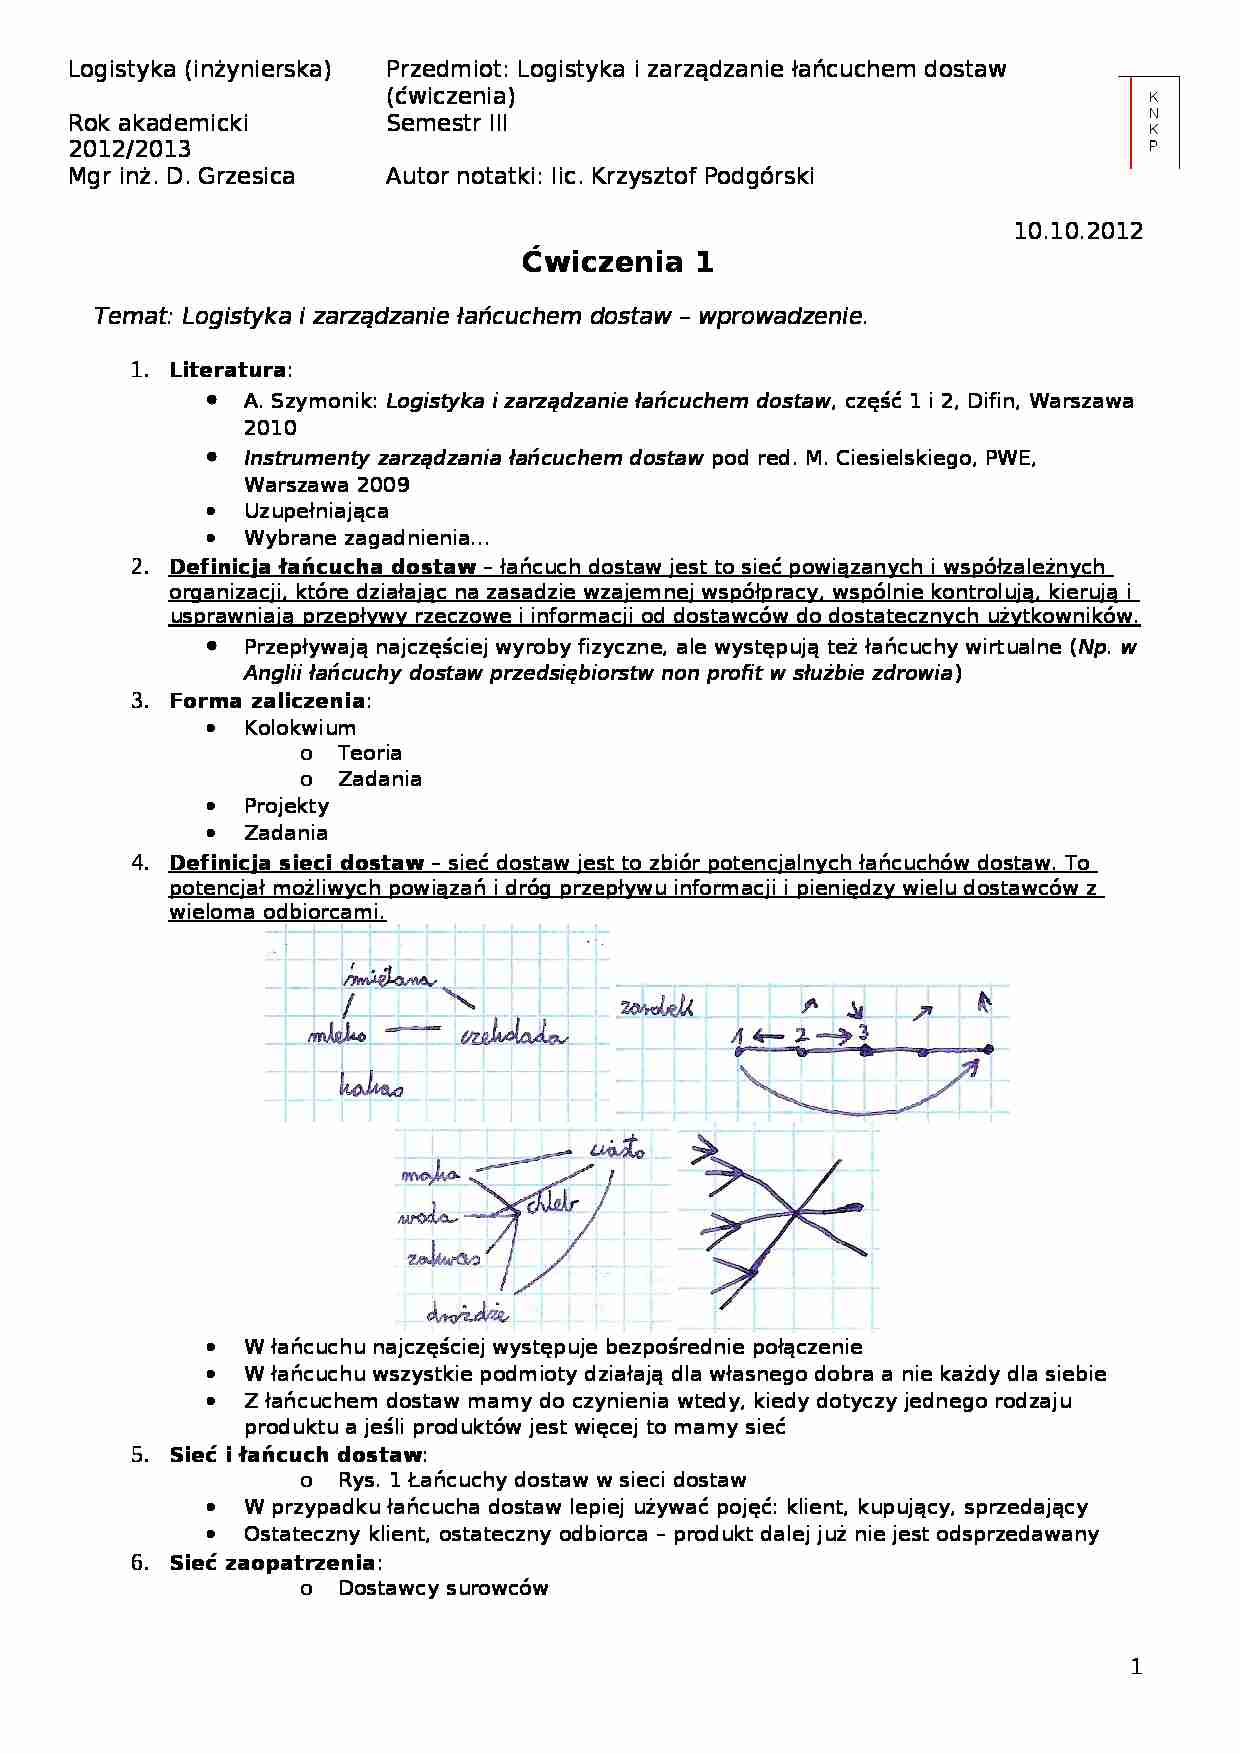 Ćwiczenia - Logistyka i zarządzanie łańcuchem dostaw - wprowadzenie - strona 1